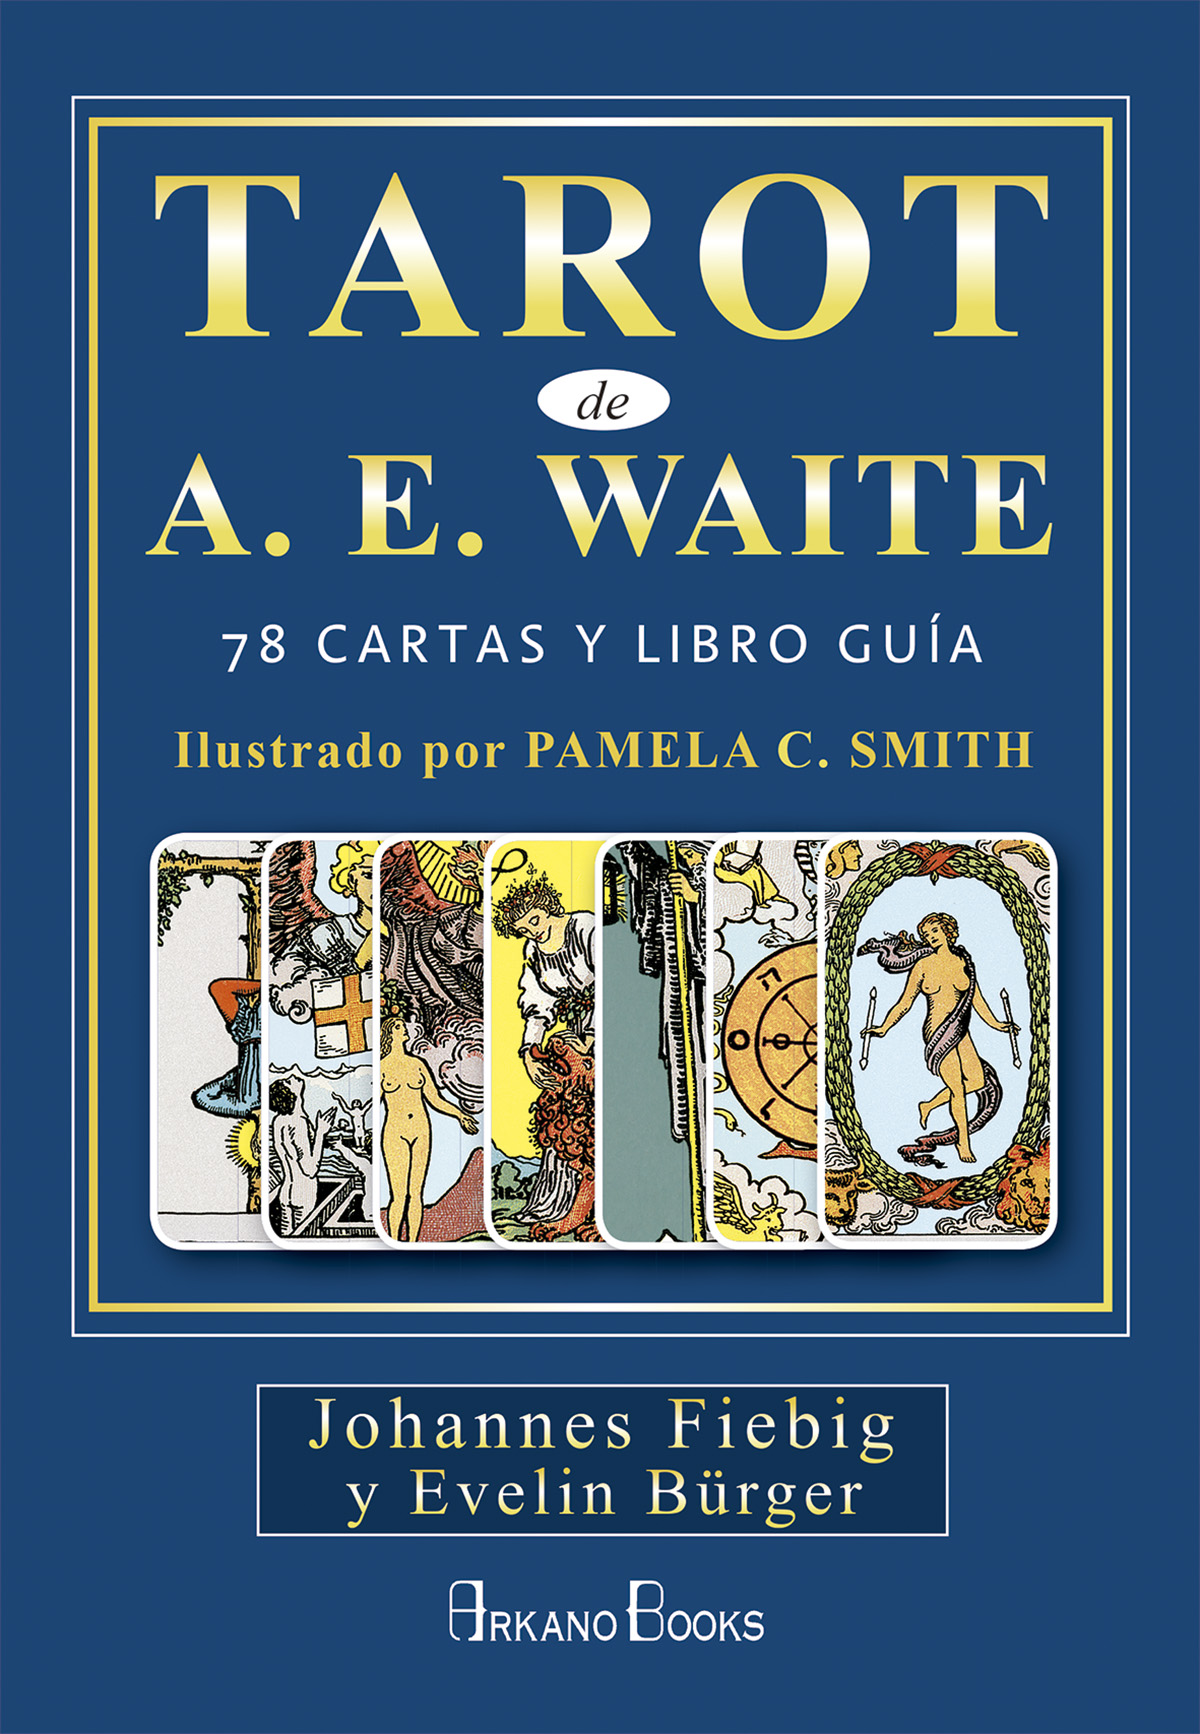 Tarot de A. E. Waite ( libro + cartas )